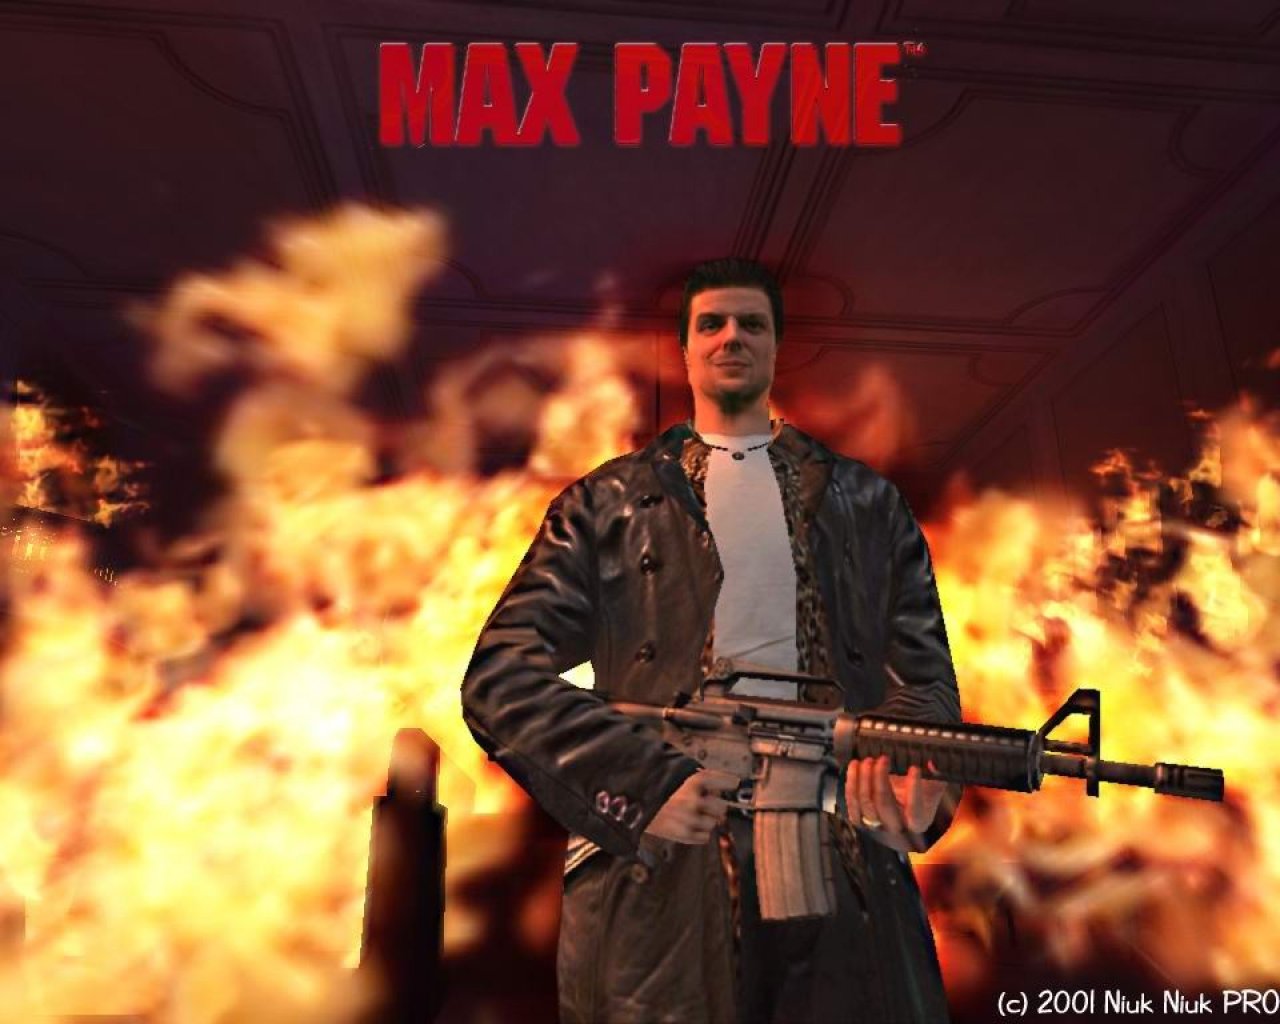 Макс играет 1. Max Payne 1. Макс Пейн игра 2001. Max Payne 1 игра. Макс Пейн из игры 1.